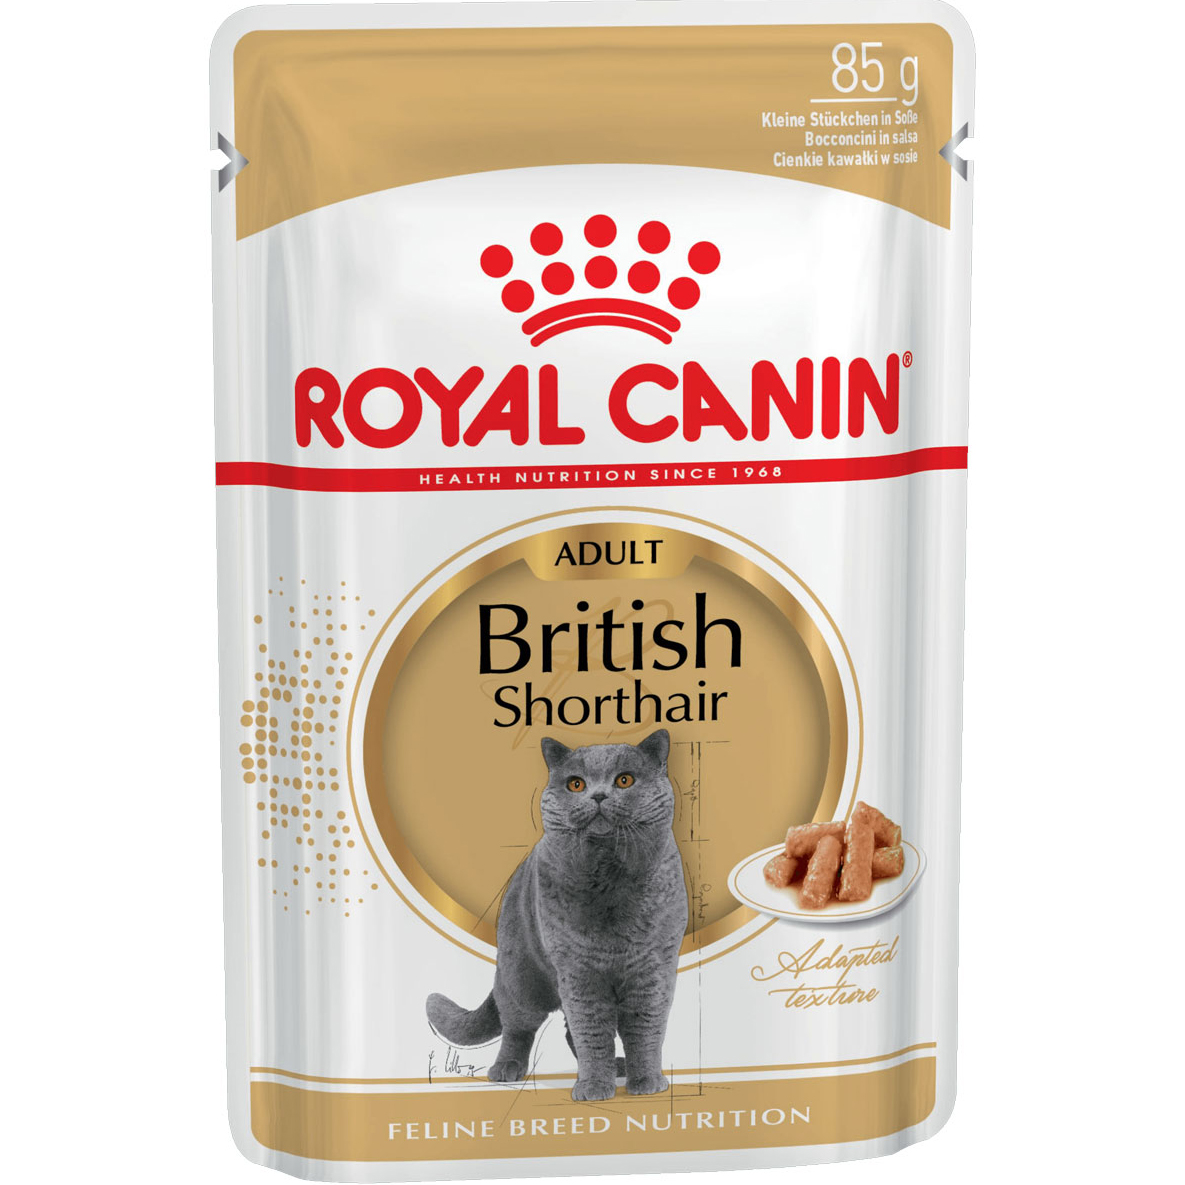 Корм для кошек Royal Canin Для британской короткошерстной 85 г корм для кошек royal canin для британской короткошерстной в соус конс